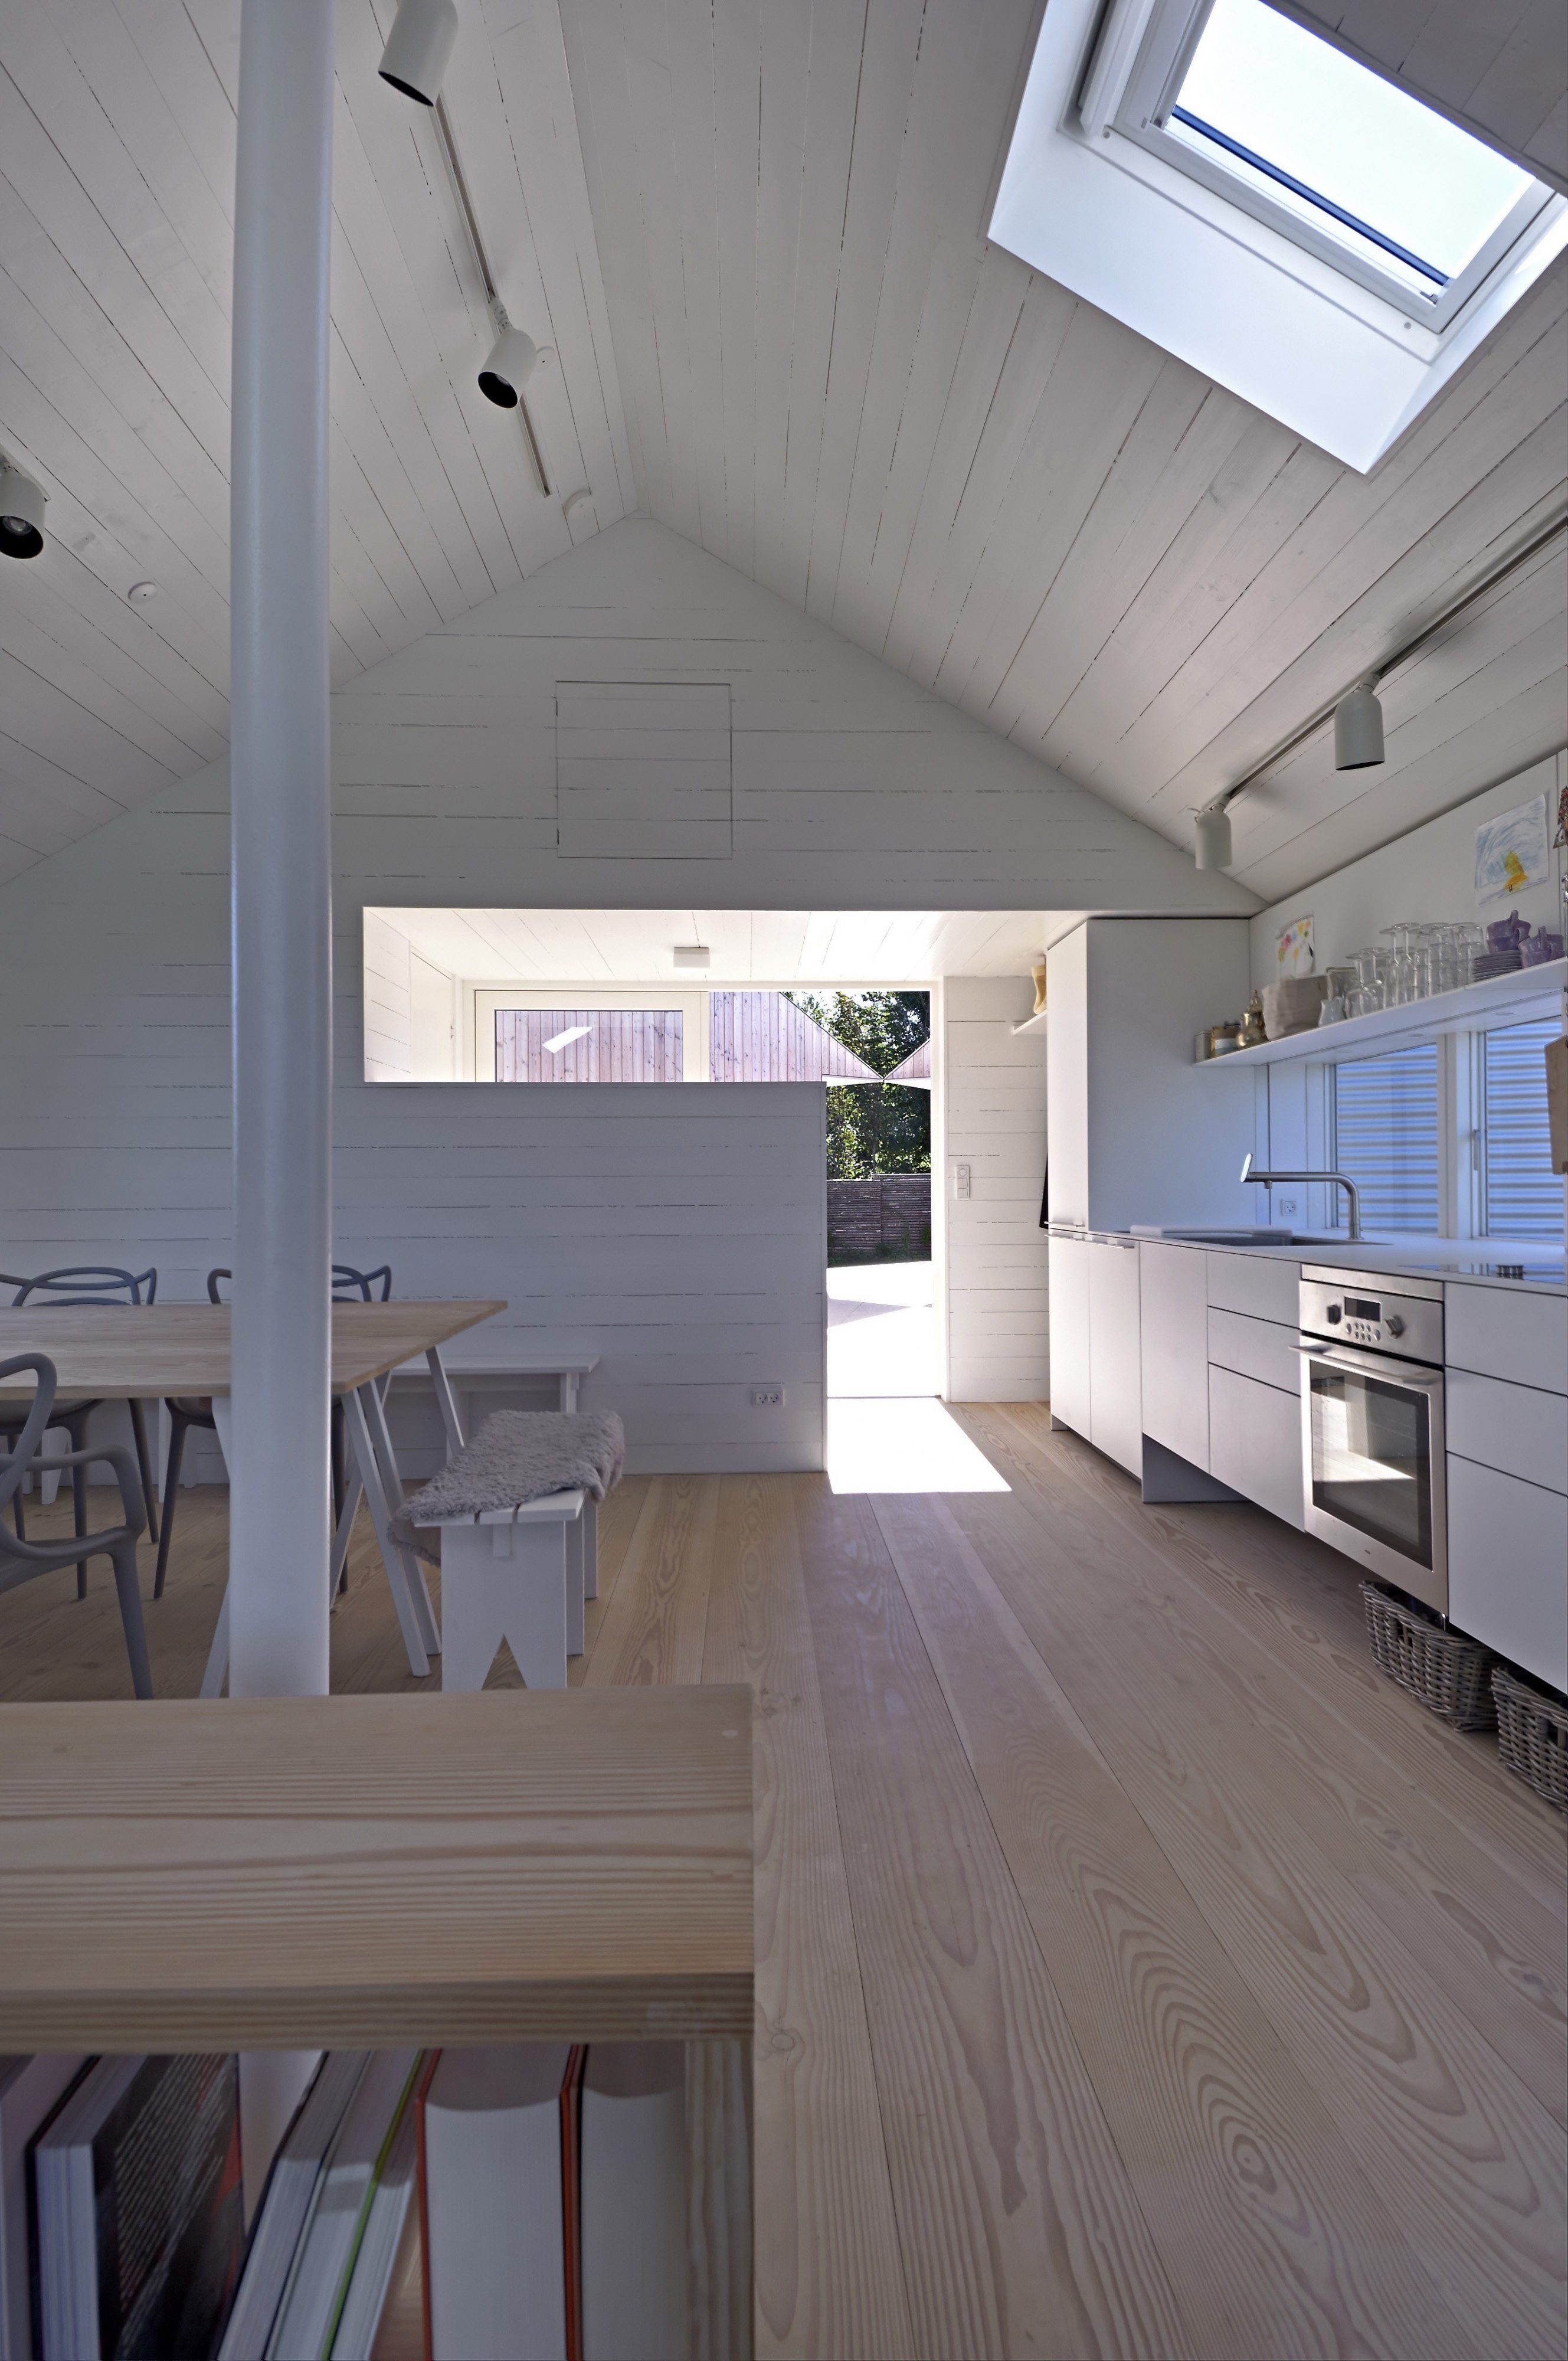 Summerhouse in Denmark by JVA